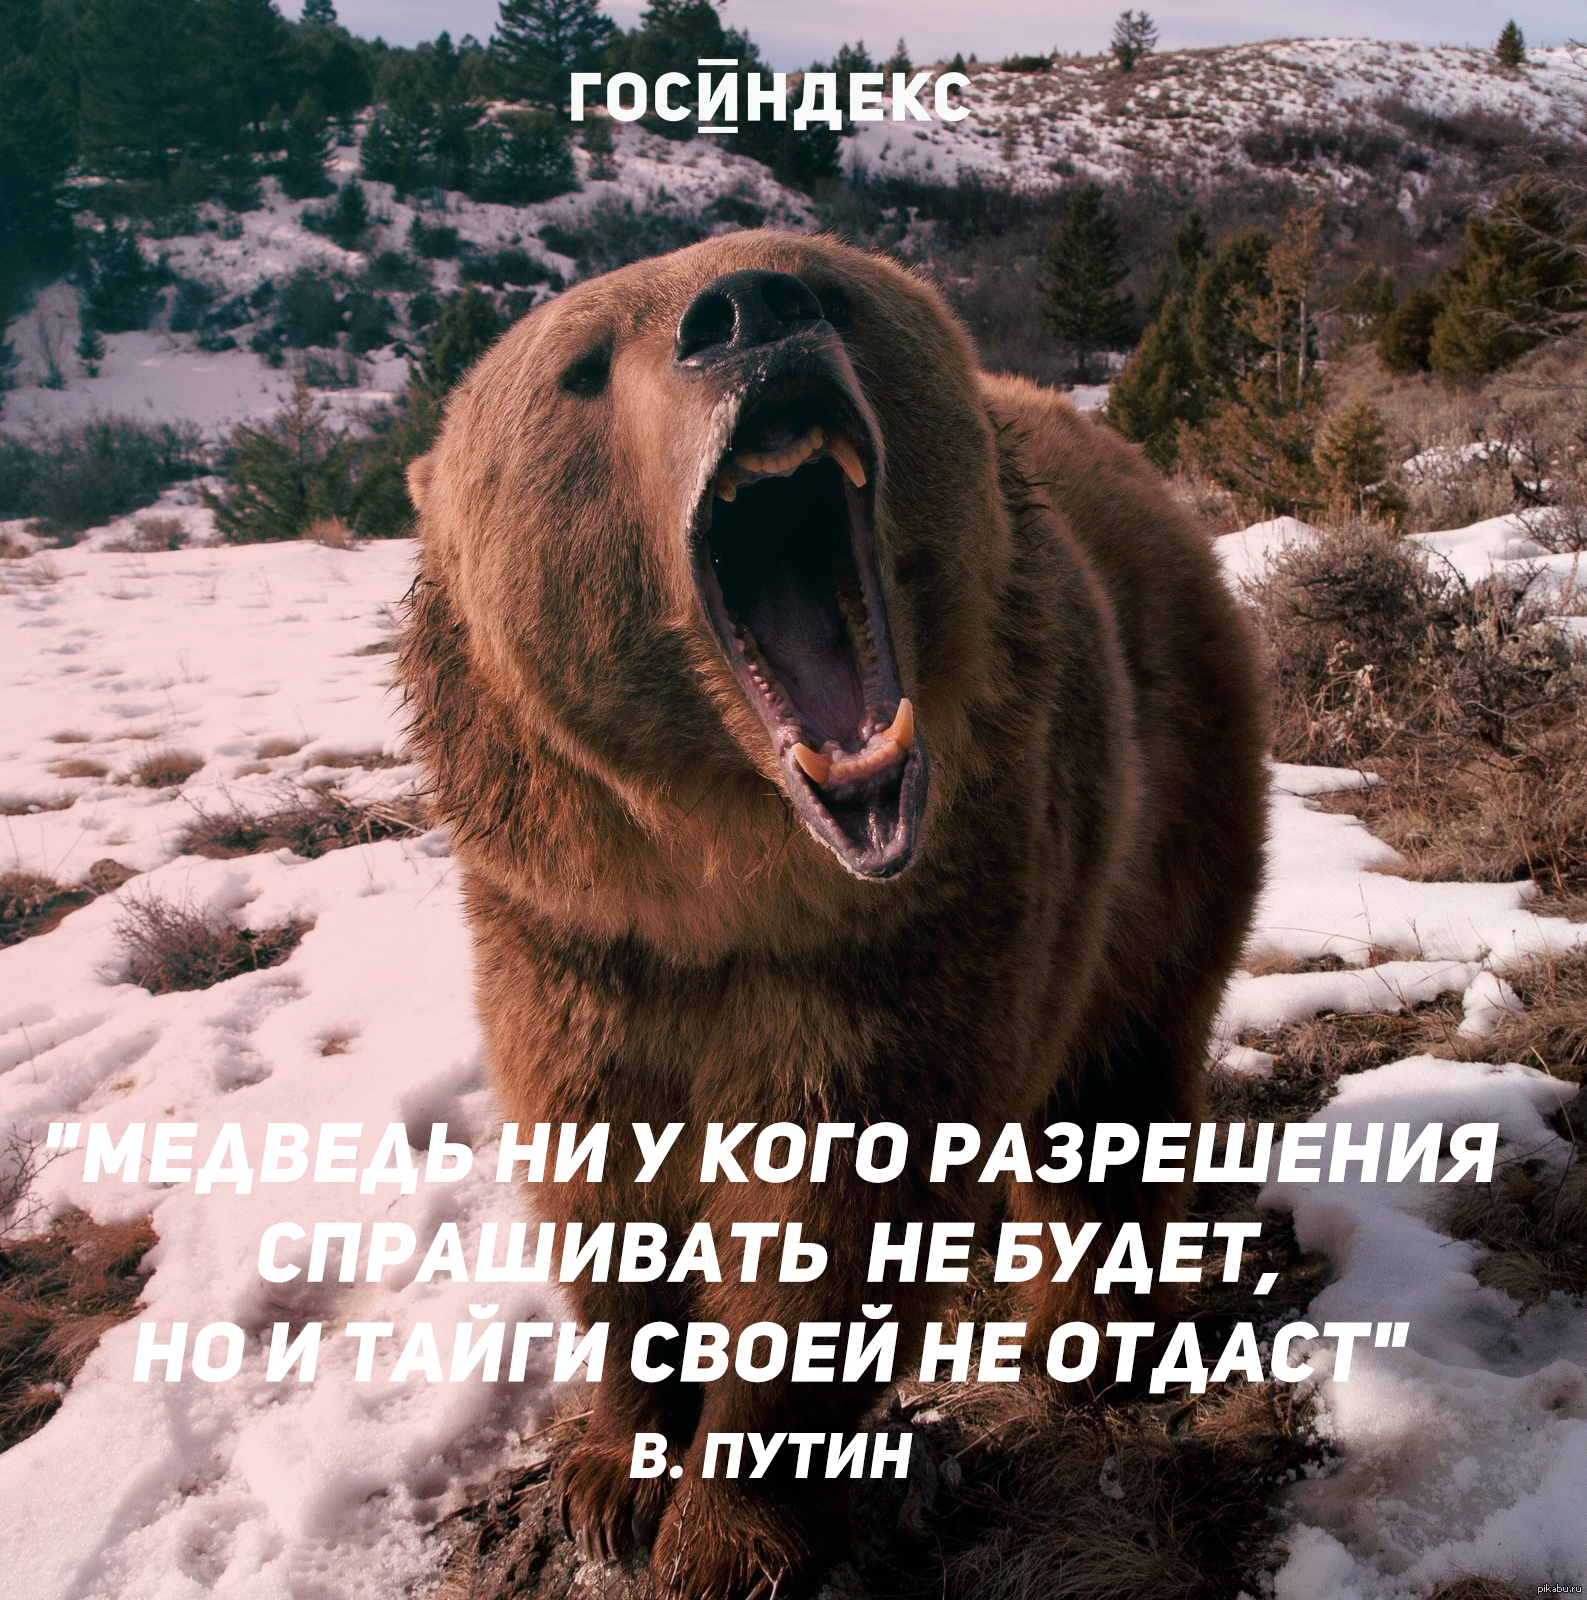 Не раз бывал в тайге. Афоризмы про медведя. Цитаты про медведя. Афоризмы про русского медведя. Медведь афоризмы высказывания.